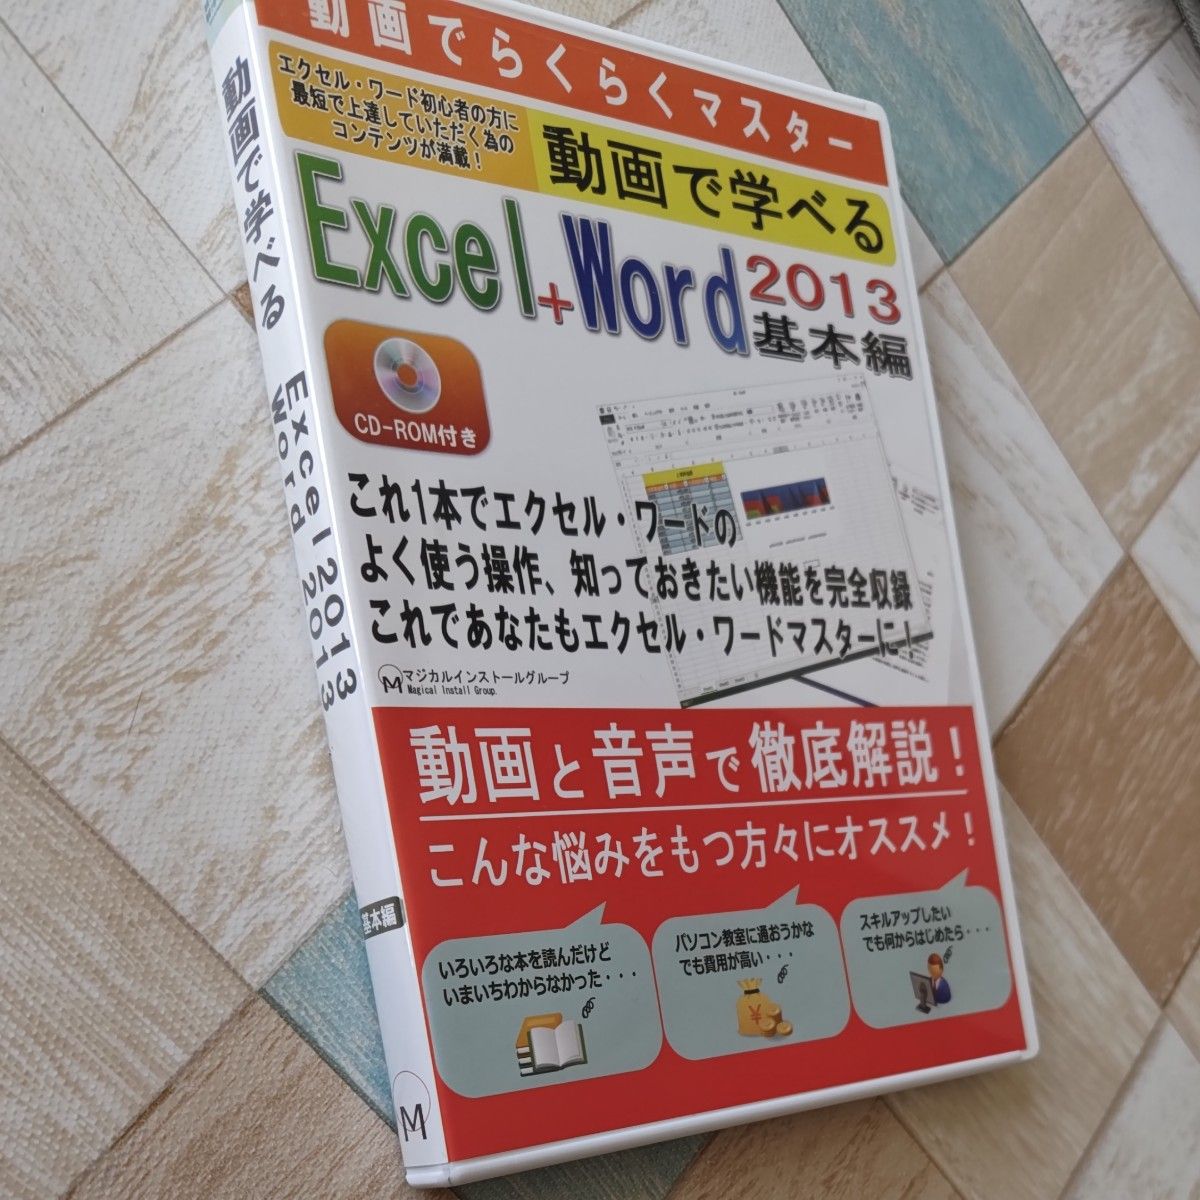 中古Windows2000 動画で学べる EXCEL+WORD 2013 基本編